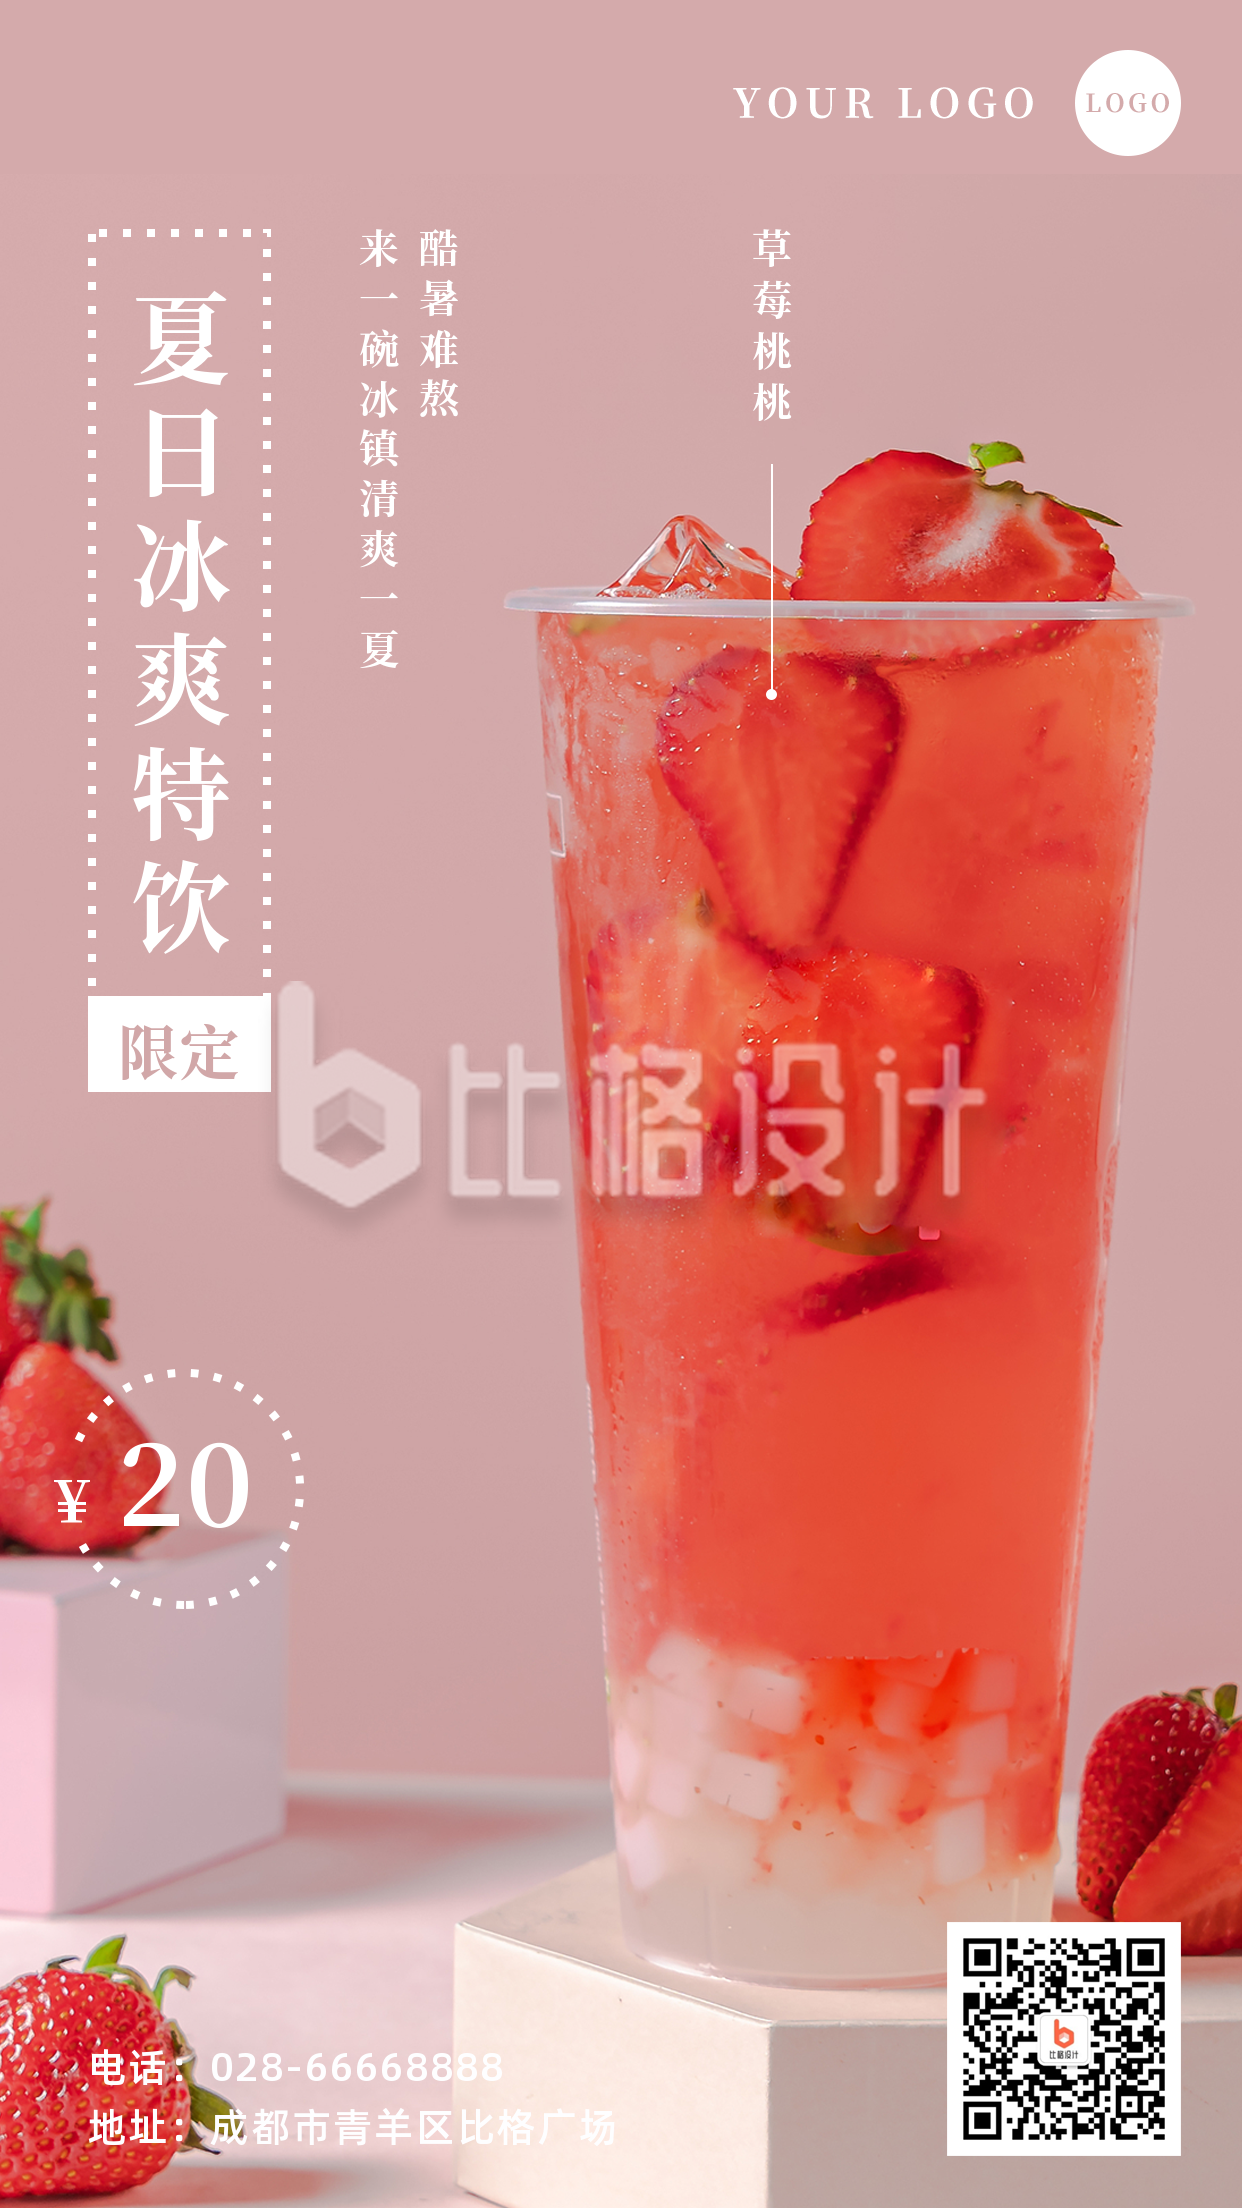 简约文艺清新夏日饮品促销宣传手机海报